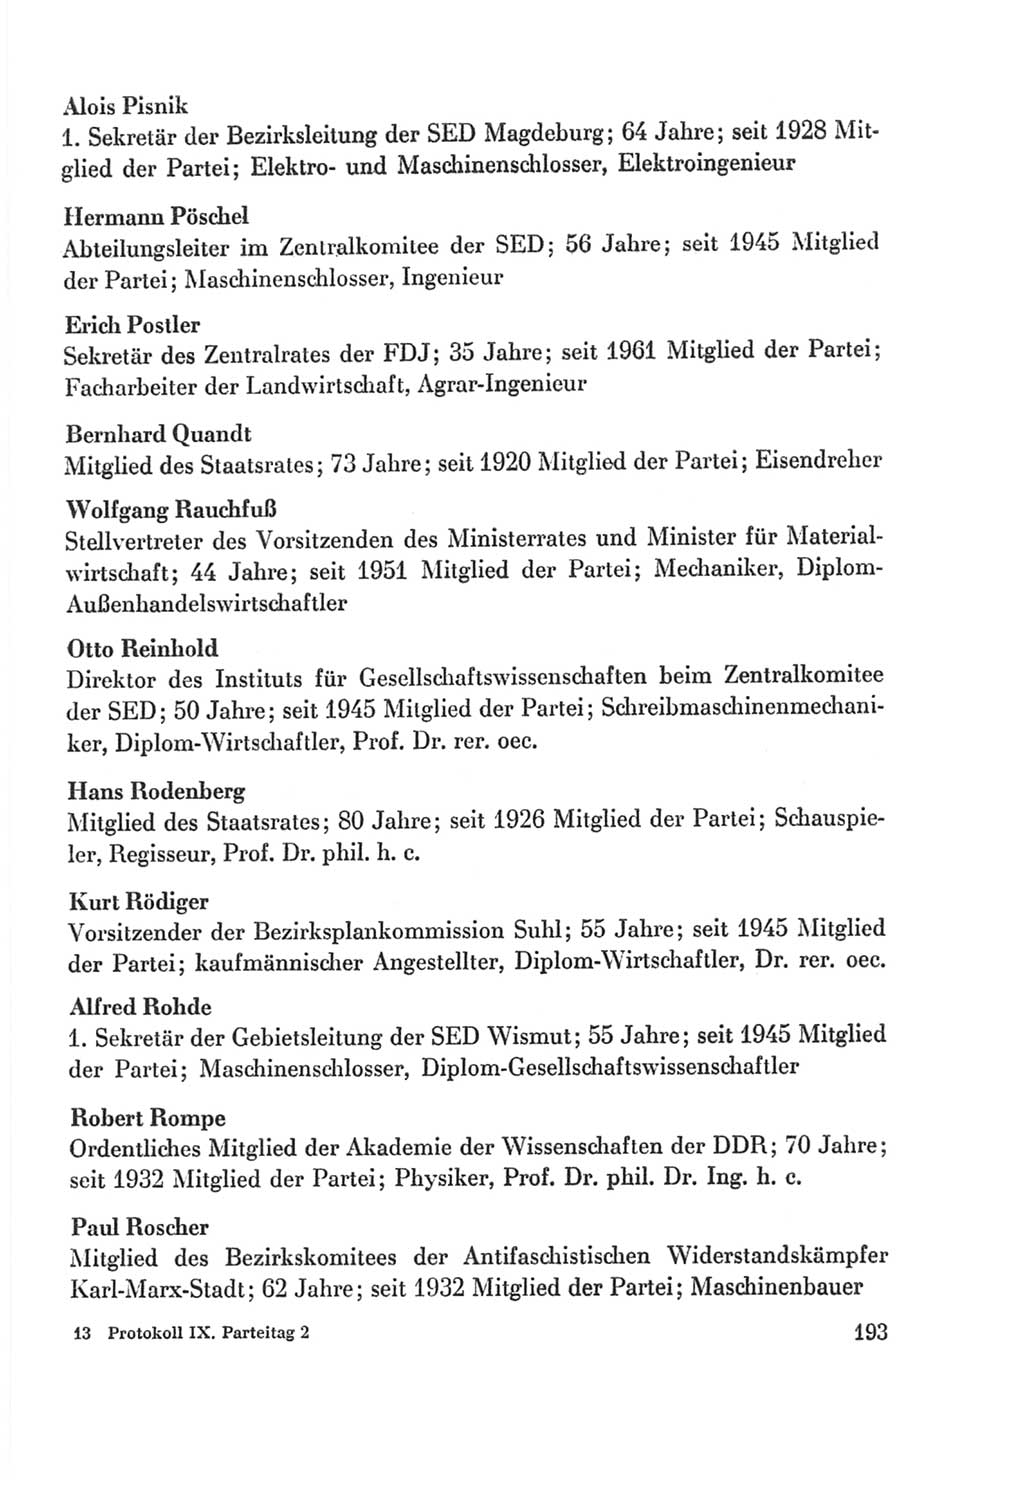 Protokoll der Verhandlungen des Ⅸ. Parteitages der Sozialistischen Einheitspartei Deutschlands (SED) [Deutsche Demokratische Republik (DDR)] 1976, Band 2, Seite 193 (Prot. Verh. Ⅸ. PT SED DDR 1976, Bd. 2, S. 193)